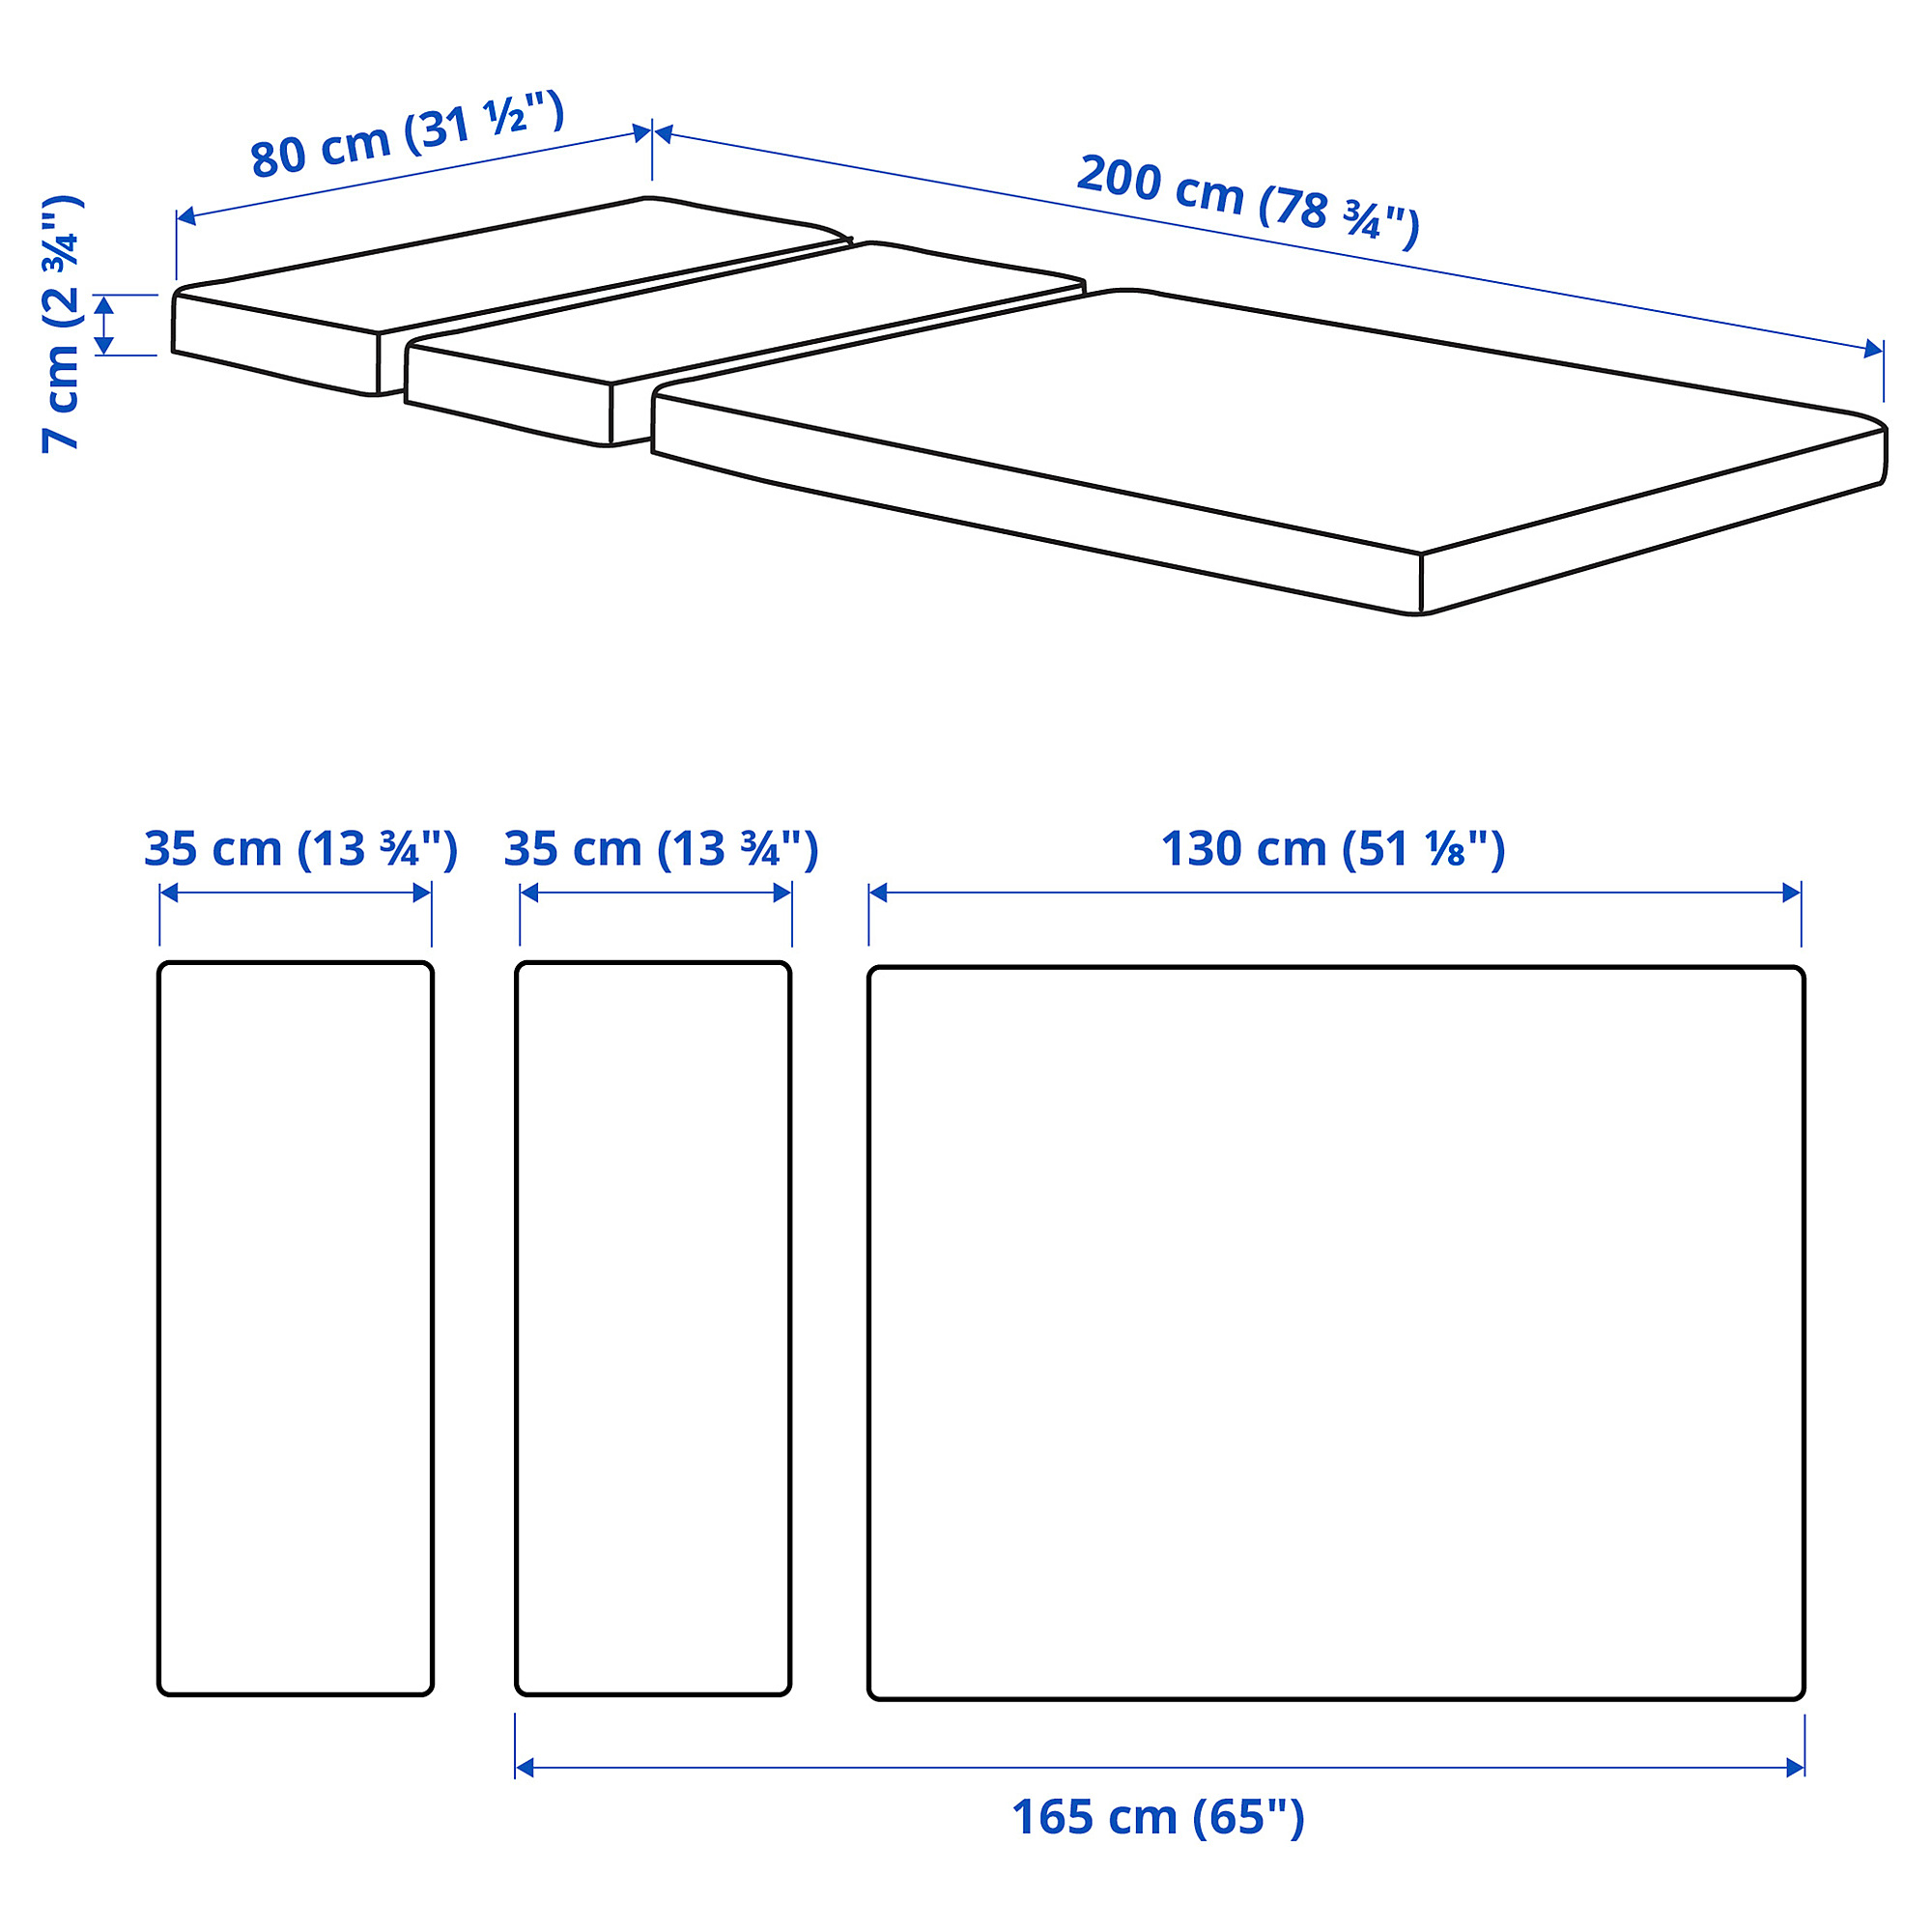 PLUTTEN foam mattress for extendable bed